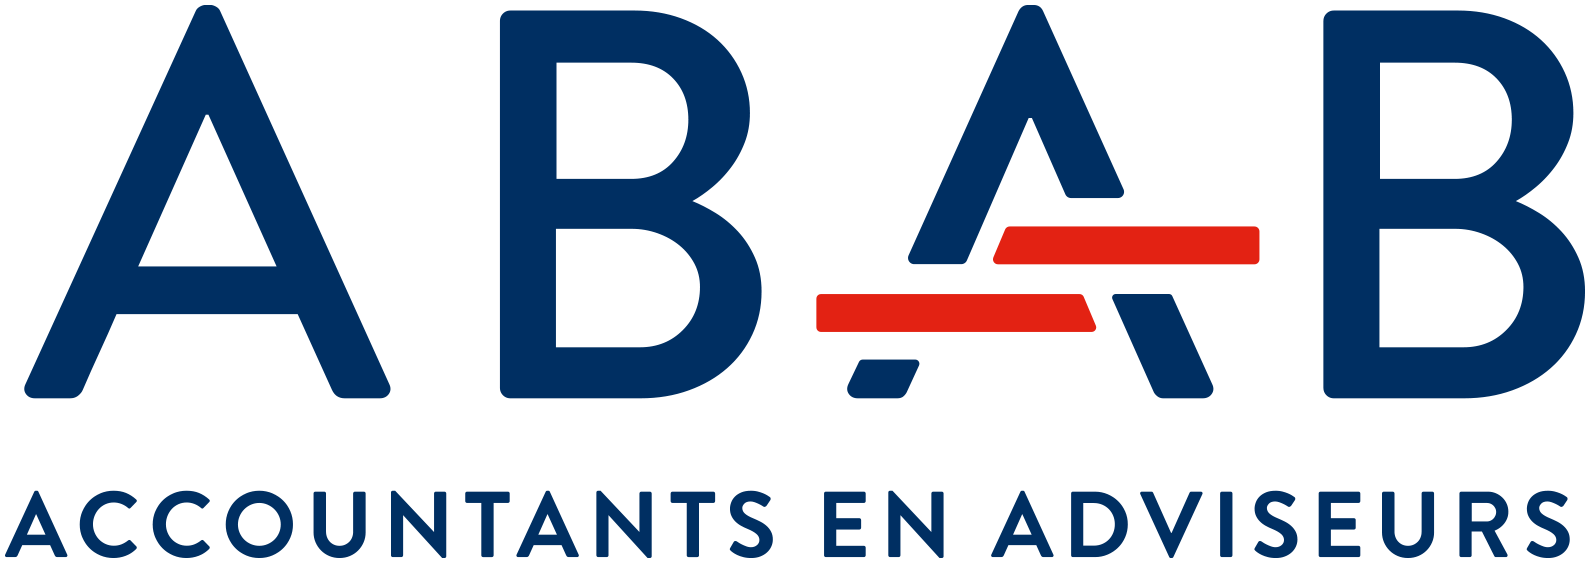 ABAB logo